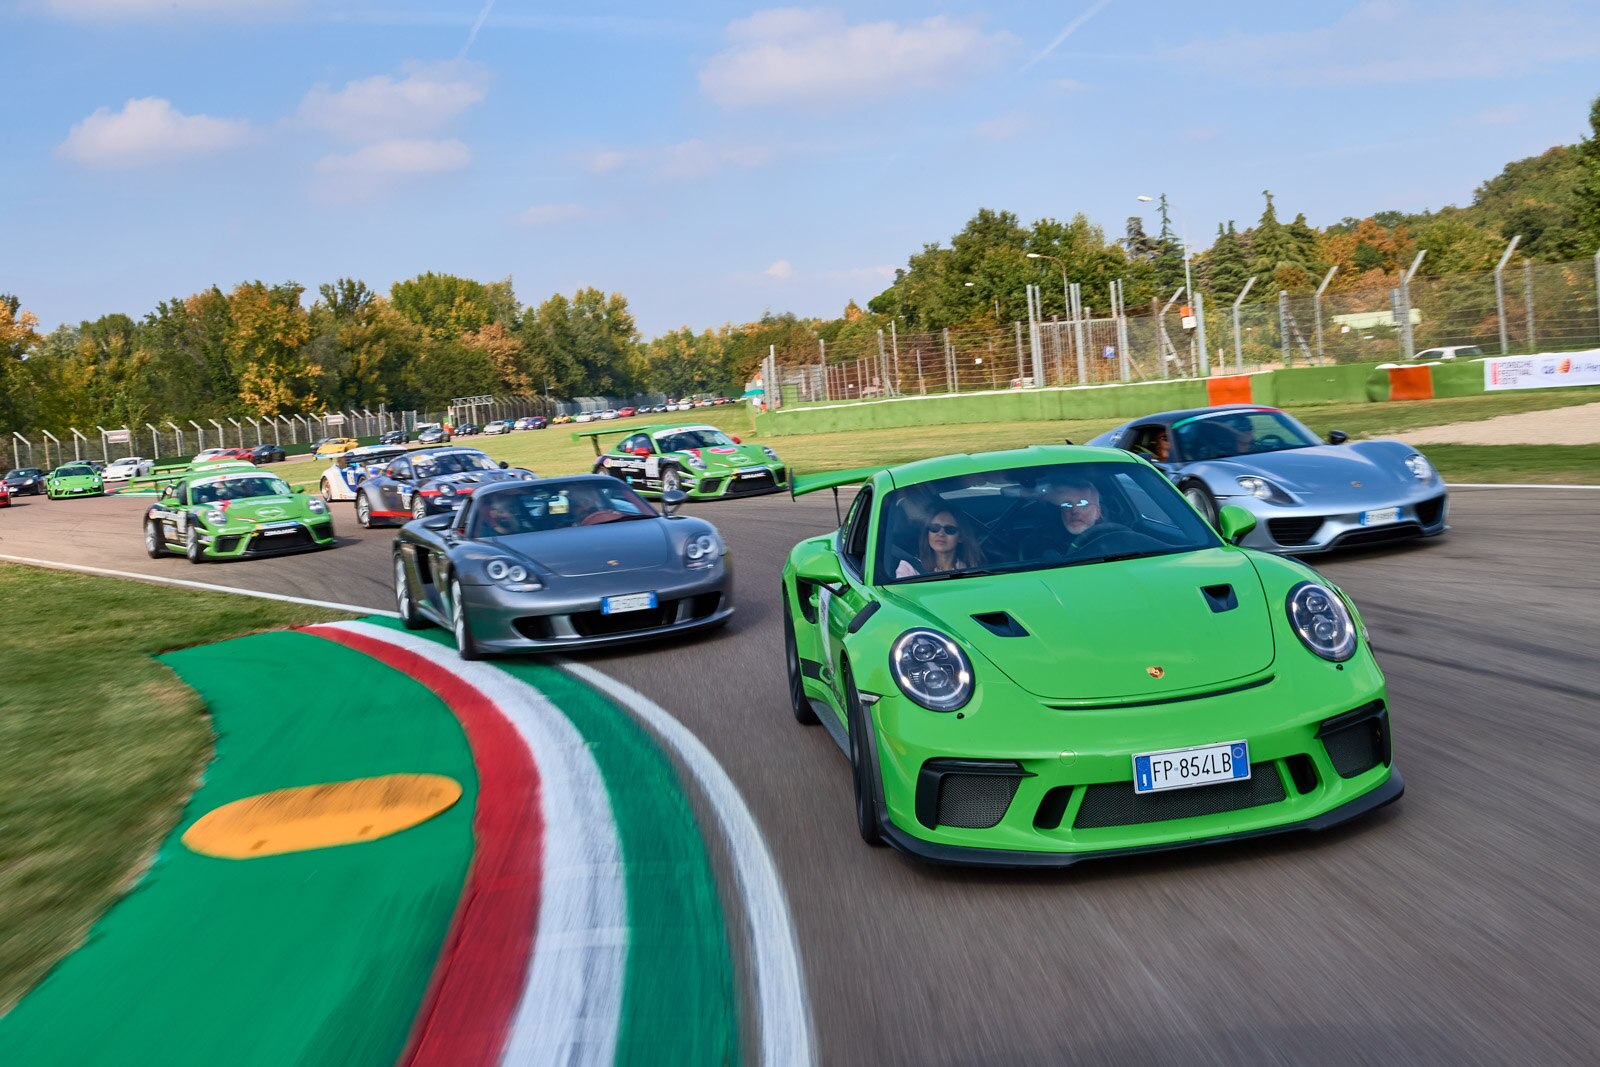 Porsche Festival un weekend da porschisti (e non solo) Ruoteclassiche